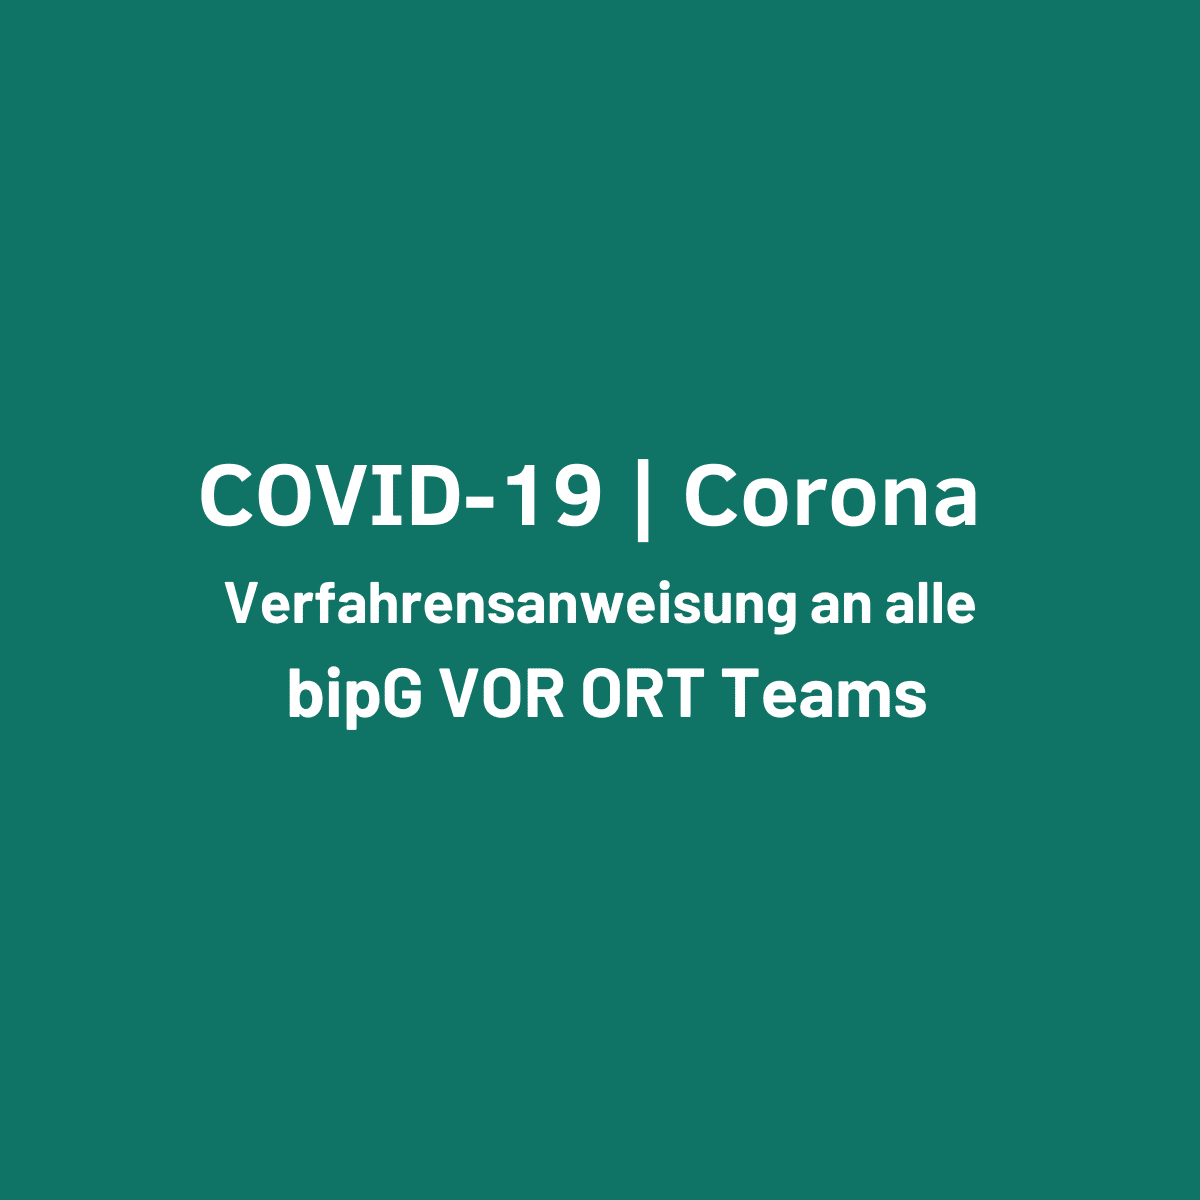 COVID-19 | Corona – Verfahrensanweisung An alle bipG VOR ORT Teams